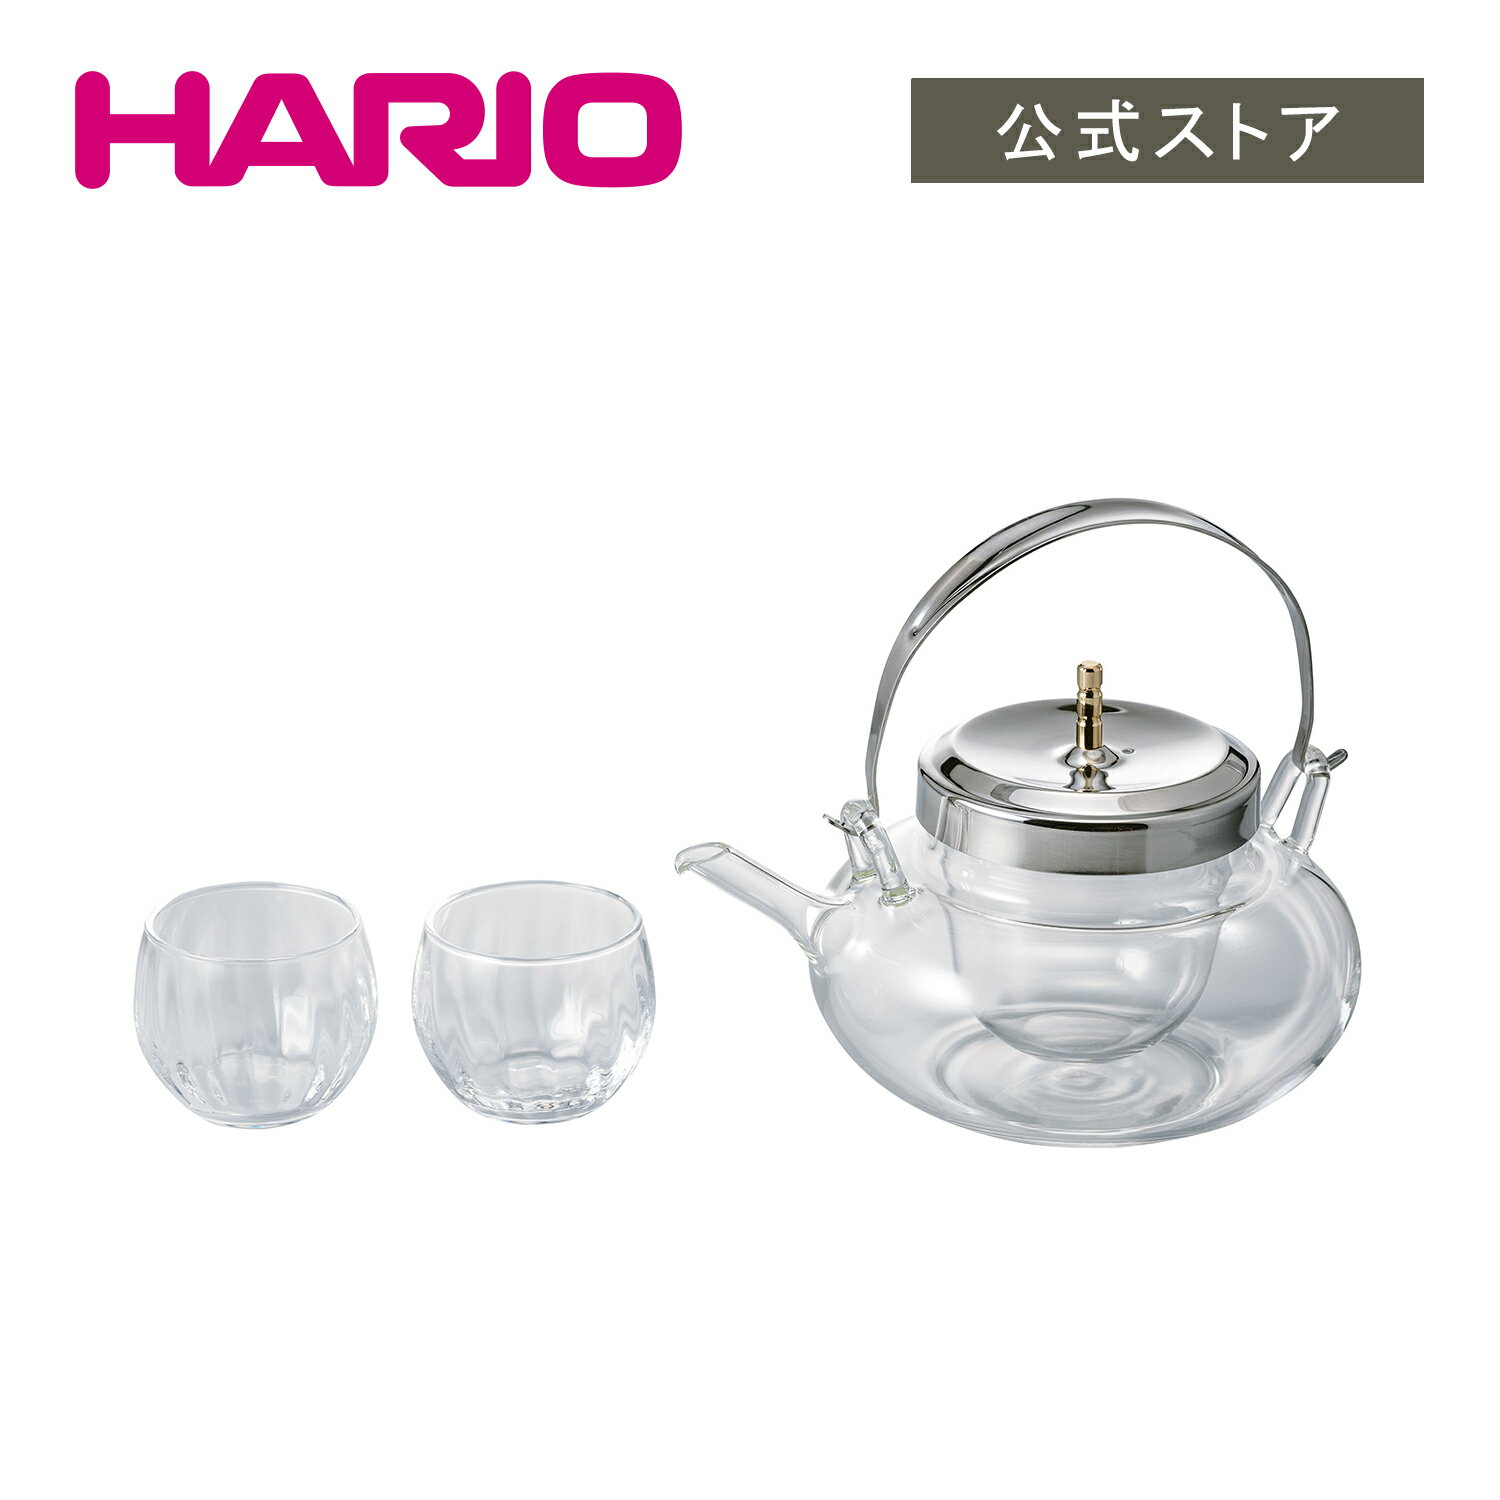 【公式ショップ】HARIO ハリオ 丸地炉利・グラスセット